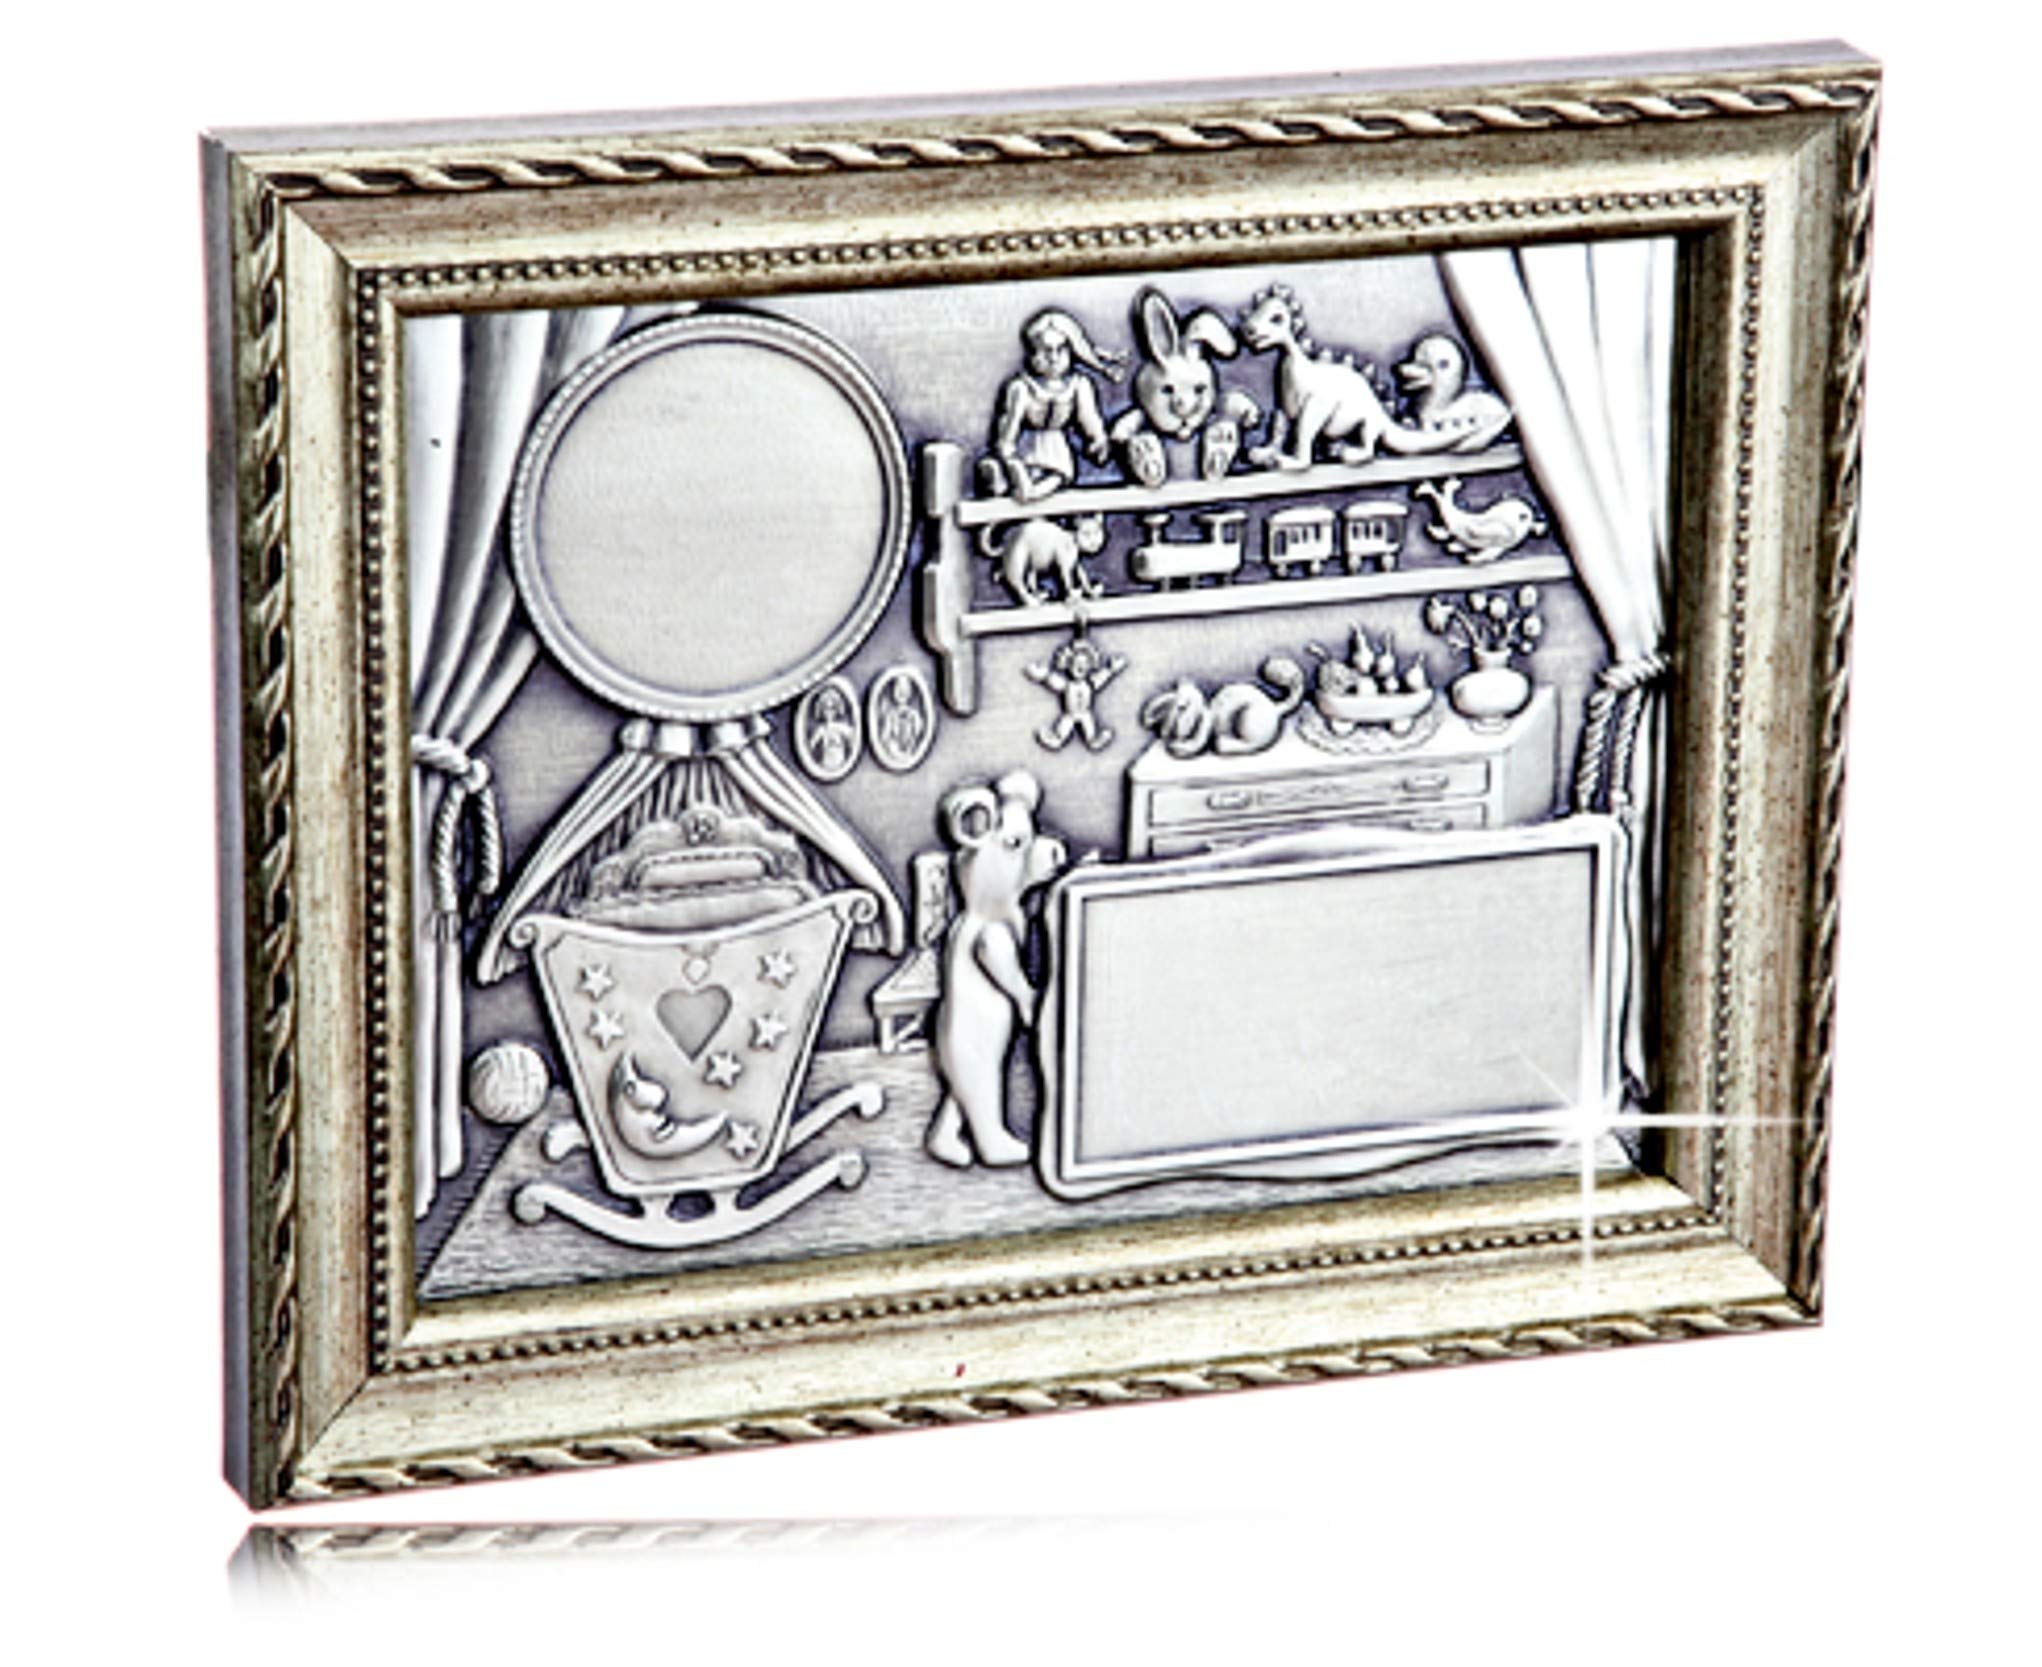 Design Geburtentafel aus Zinn im Schmuckrahmen - Geburtsrelief mit Silberrahmen - Zwillingstafel zur Geburt incl. Gravur, Zinnrelief